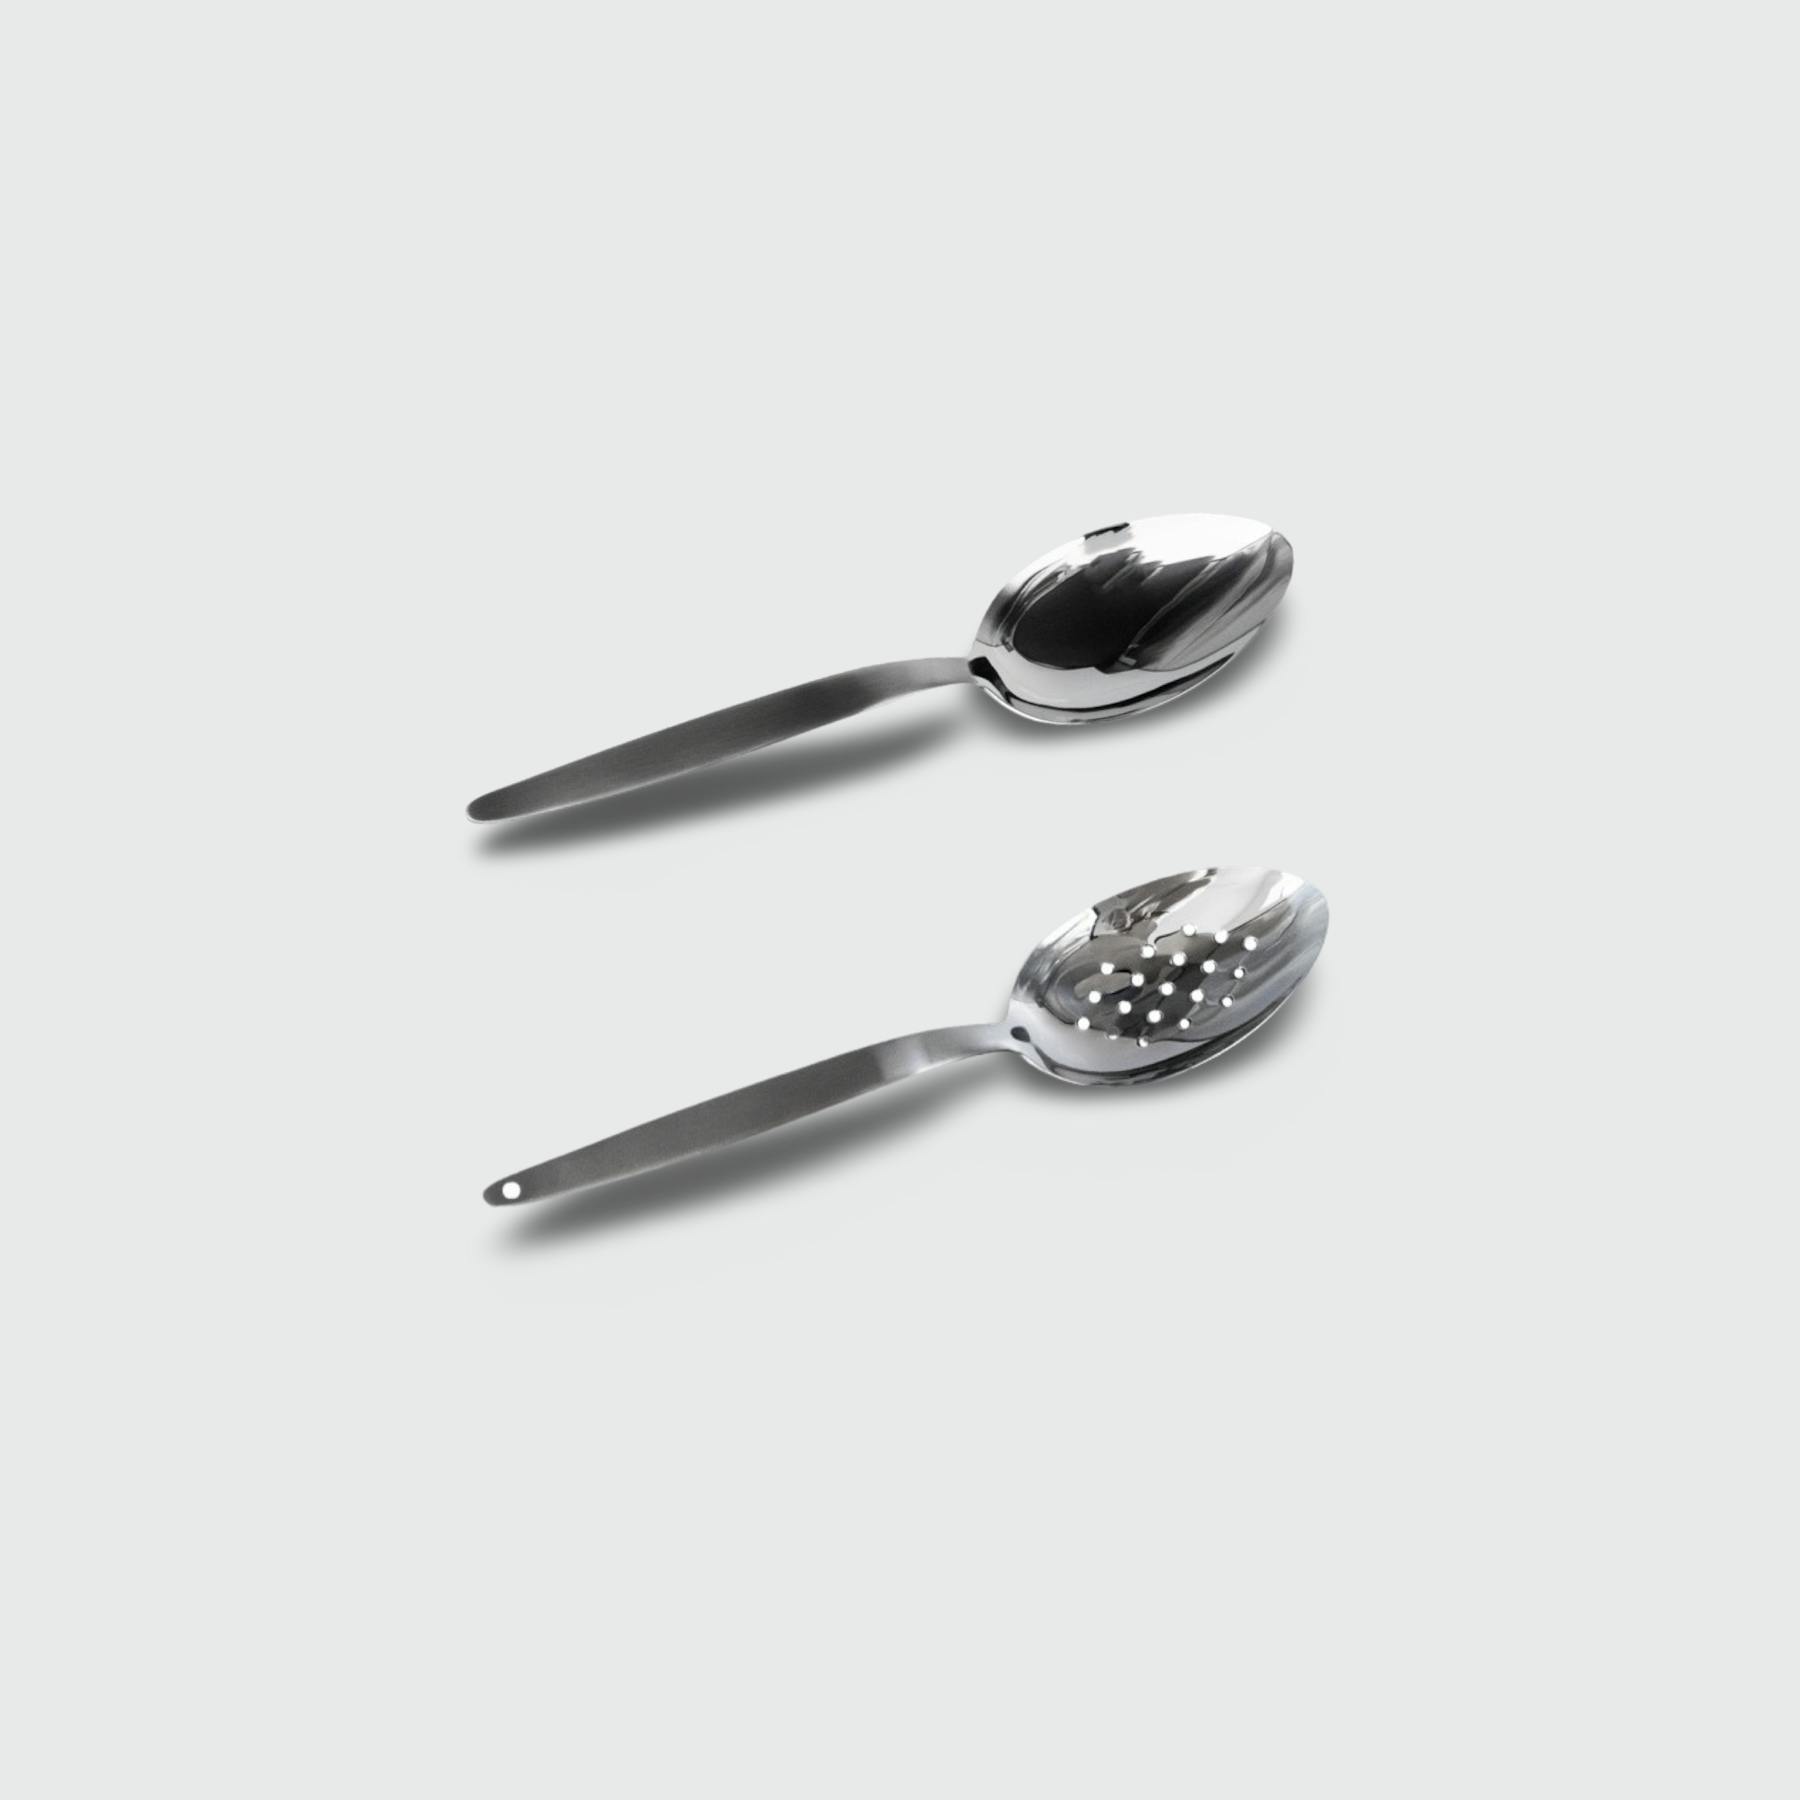 Kunz Spoons, Misipasta